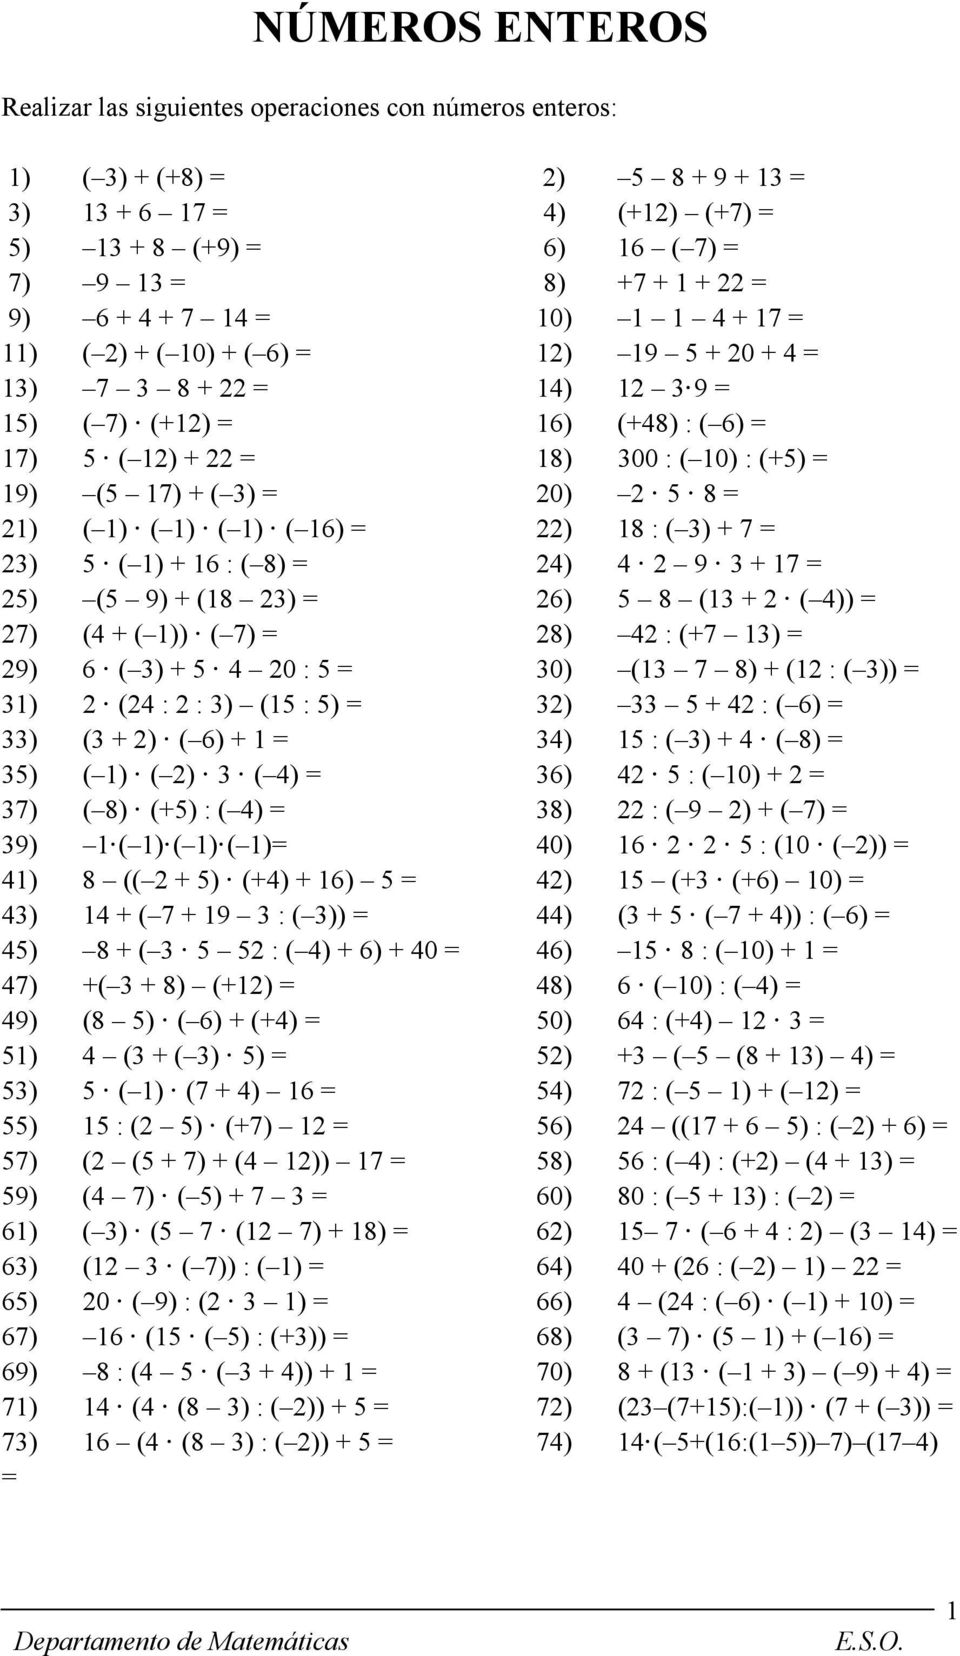 + ( 3) = 20) 2 5 8 = 21) ( 1) ( 1) ( 1) ( 16) = 22) 18 : ( 3) + 7 = 23) 5 ( 1) + 16 : ( 8) = 24) 4 2 9 3 + 17 = 25) (5 9) + (18 23) = 26) 5 8 (13 + 2 ( 4)) = 27) (4 + ( 1)) ( 7) = 28) 42 : (+7 13) =